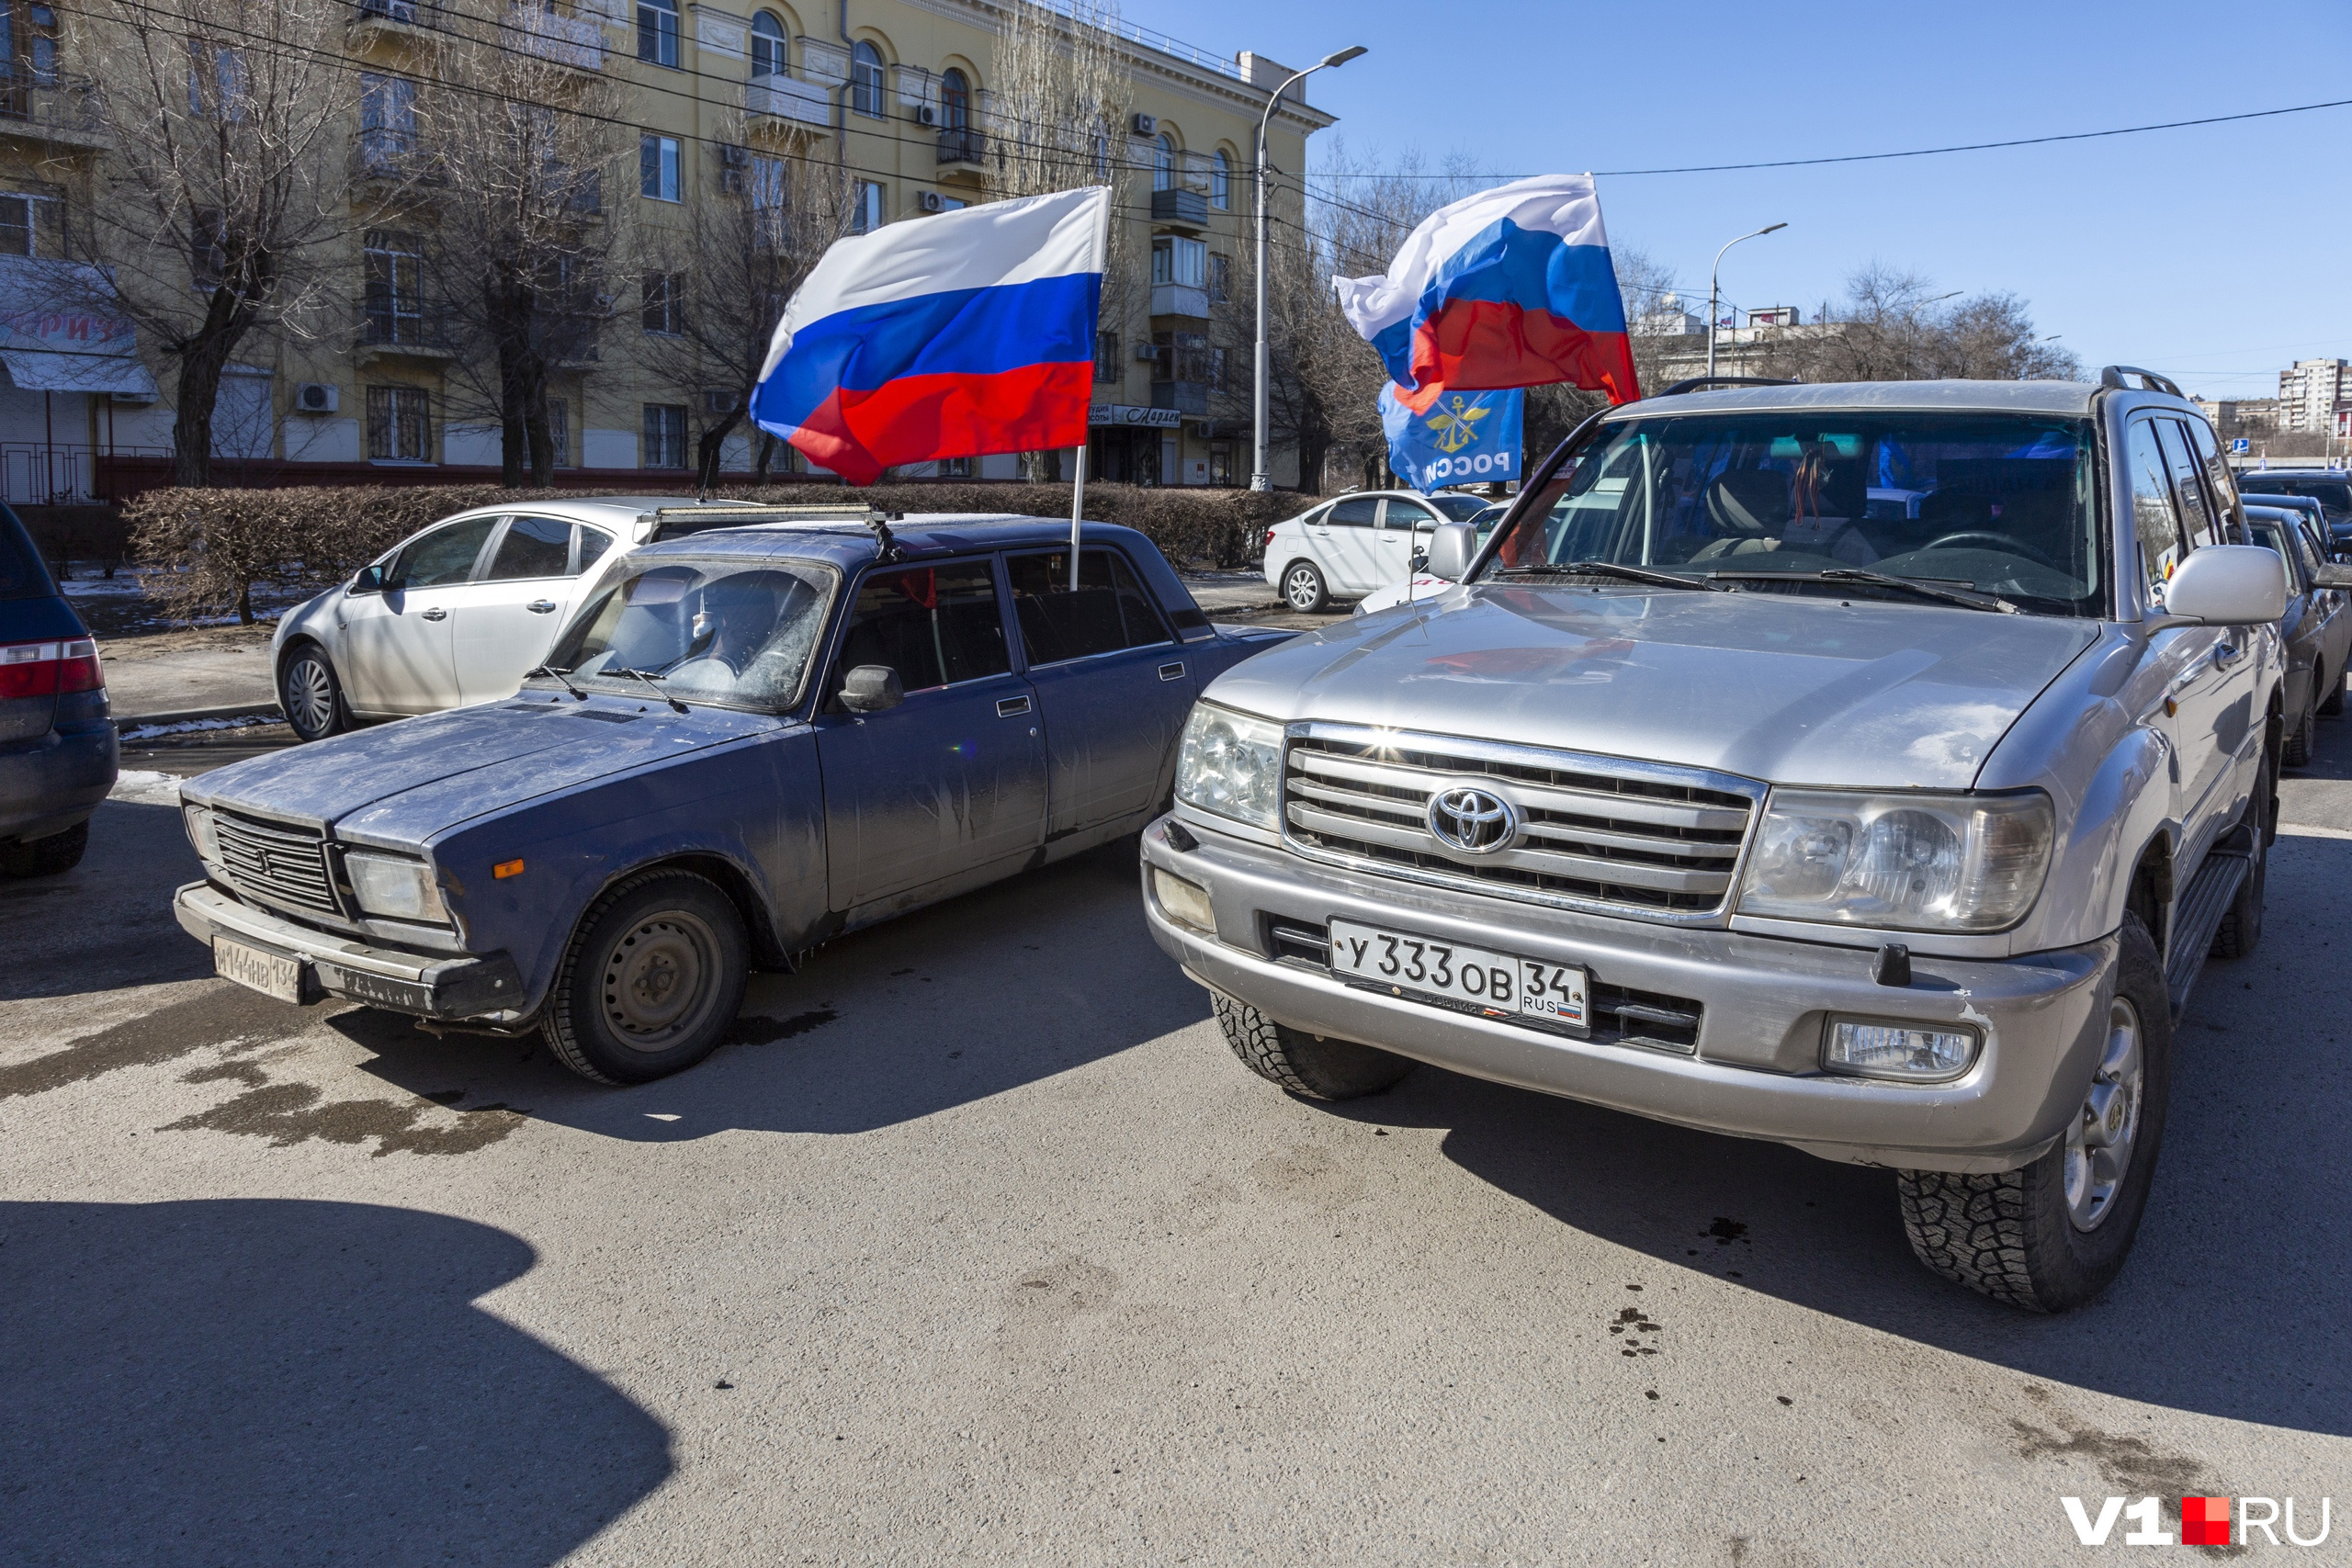 Автомобилисты украсили автомобили российским триколором